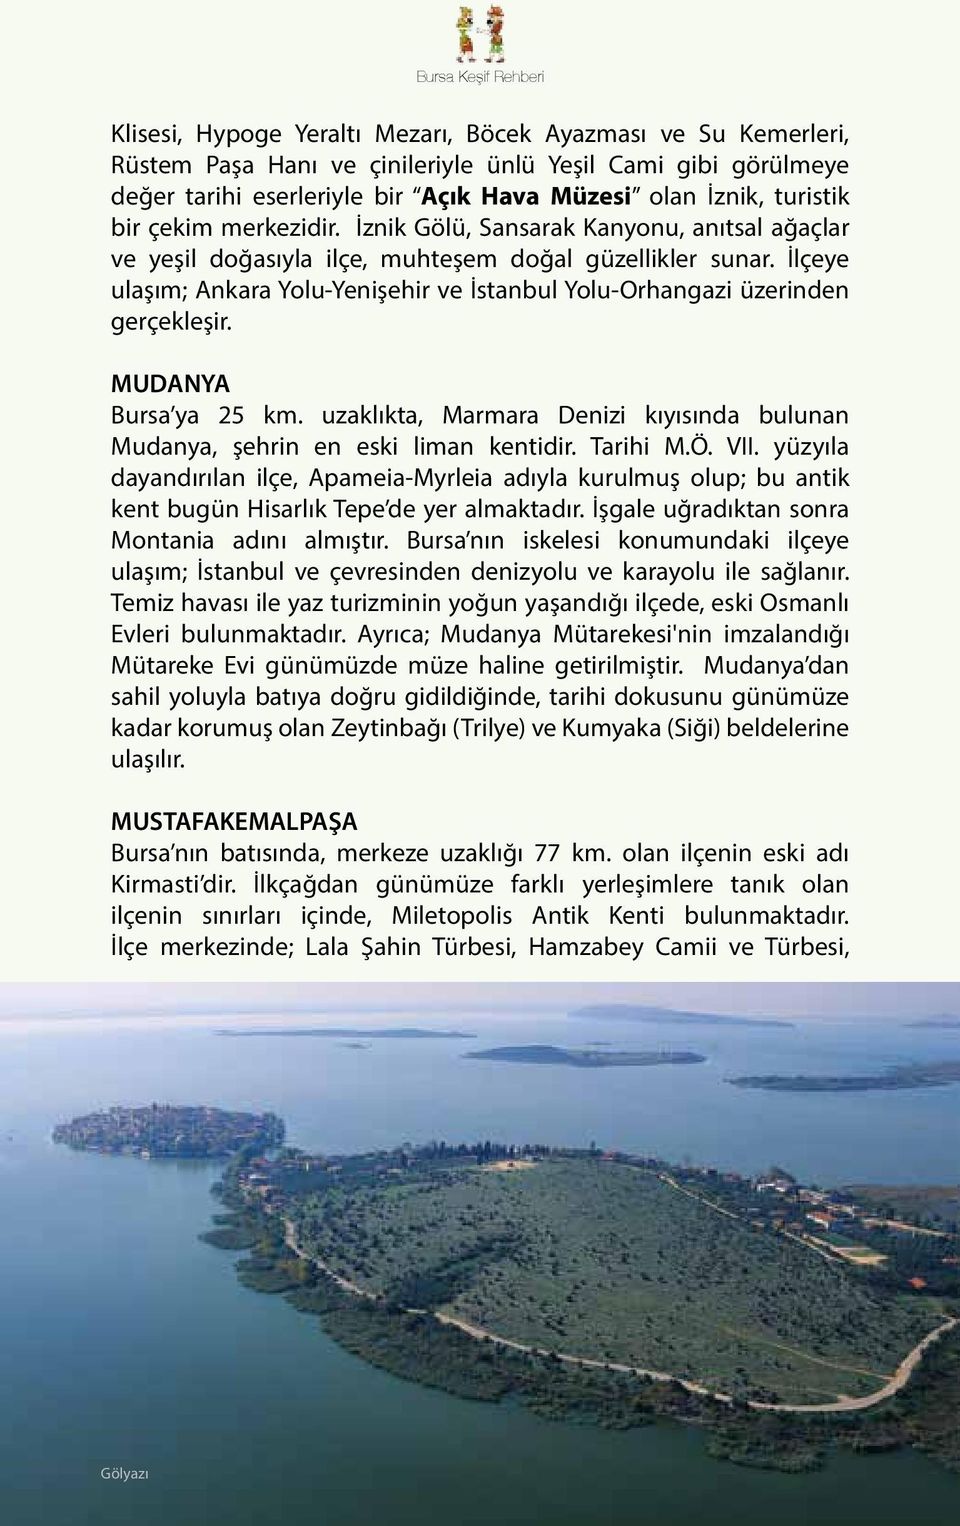 İlçeye ulaşım; Ankara Yolu-Yenişehir ve İstanbul Yolu-Orhangazi üzerinden gerçekleşir. MUDANYA Bursa ya 25 km. uzaklıkta, Marmara Denizi kıyısında bulunan Mudanya, şehrin en eski liman kentidir.